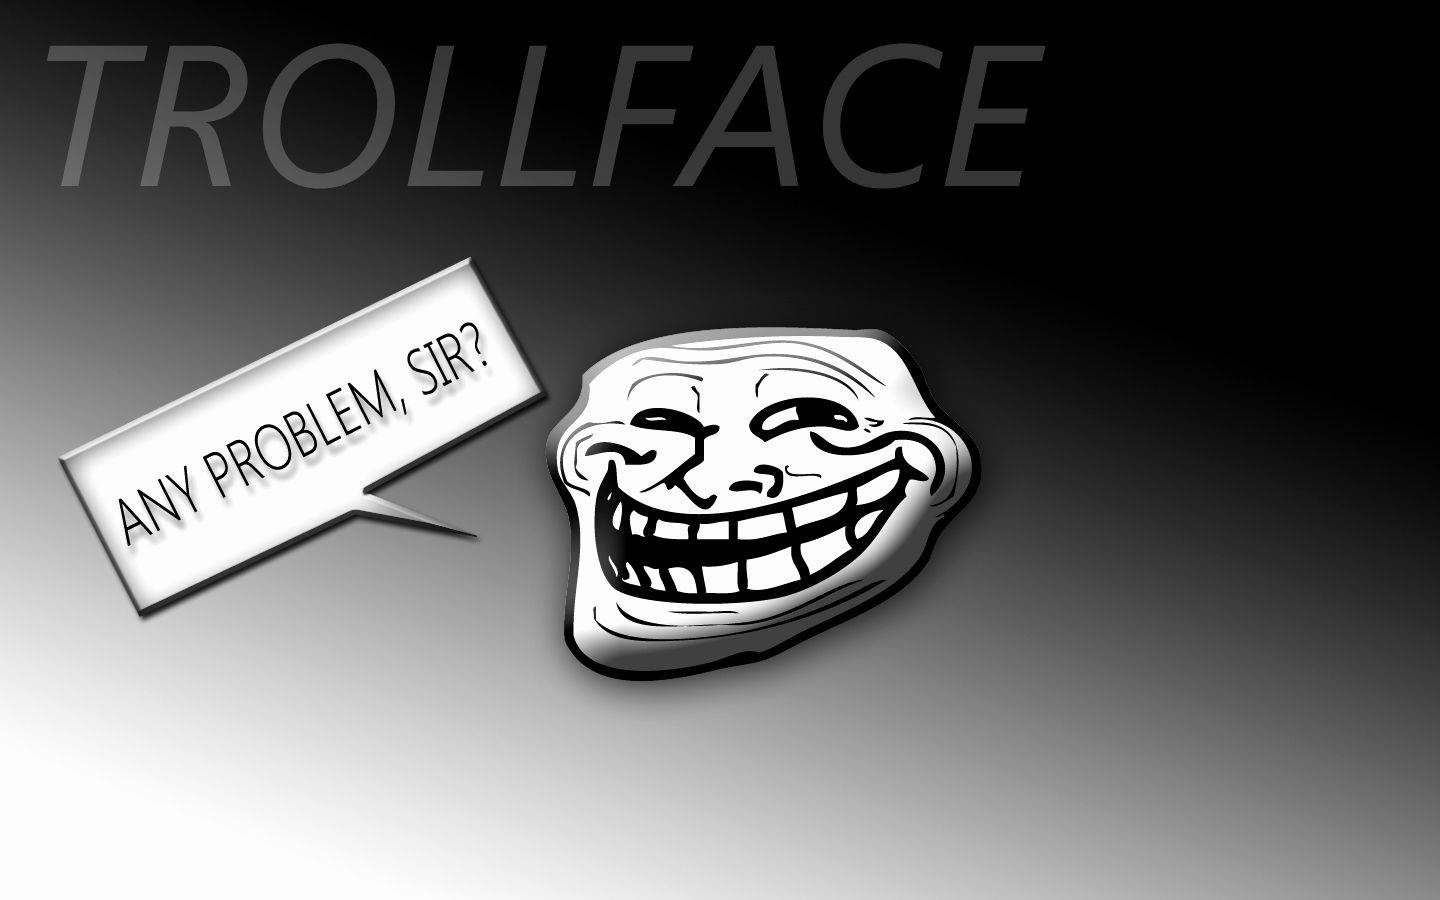 trollface wallpaper 1080p